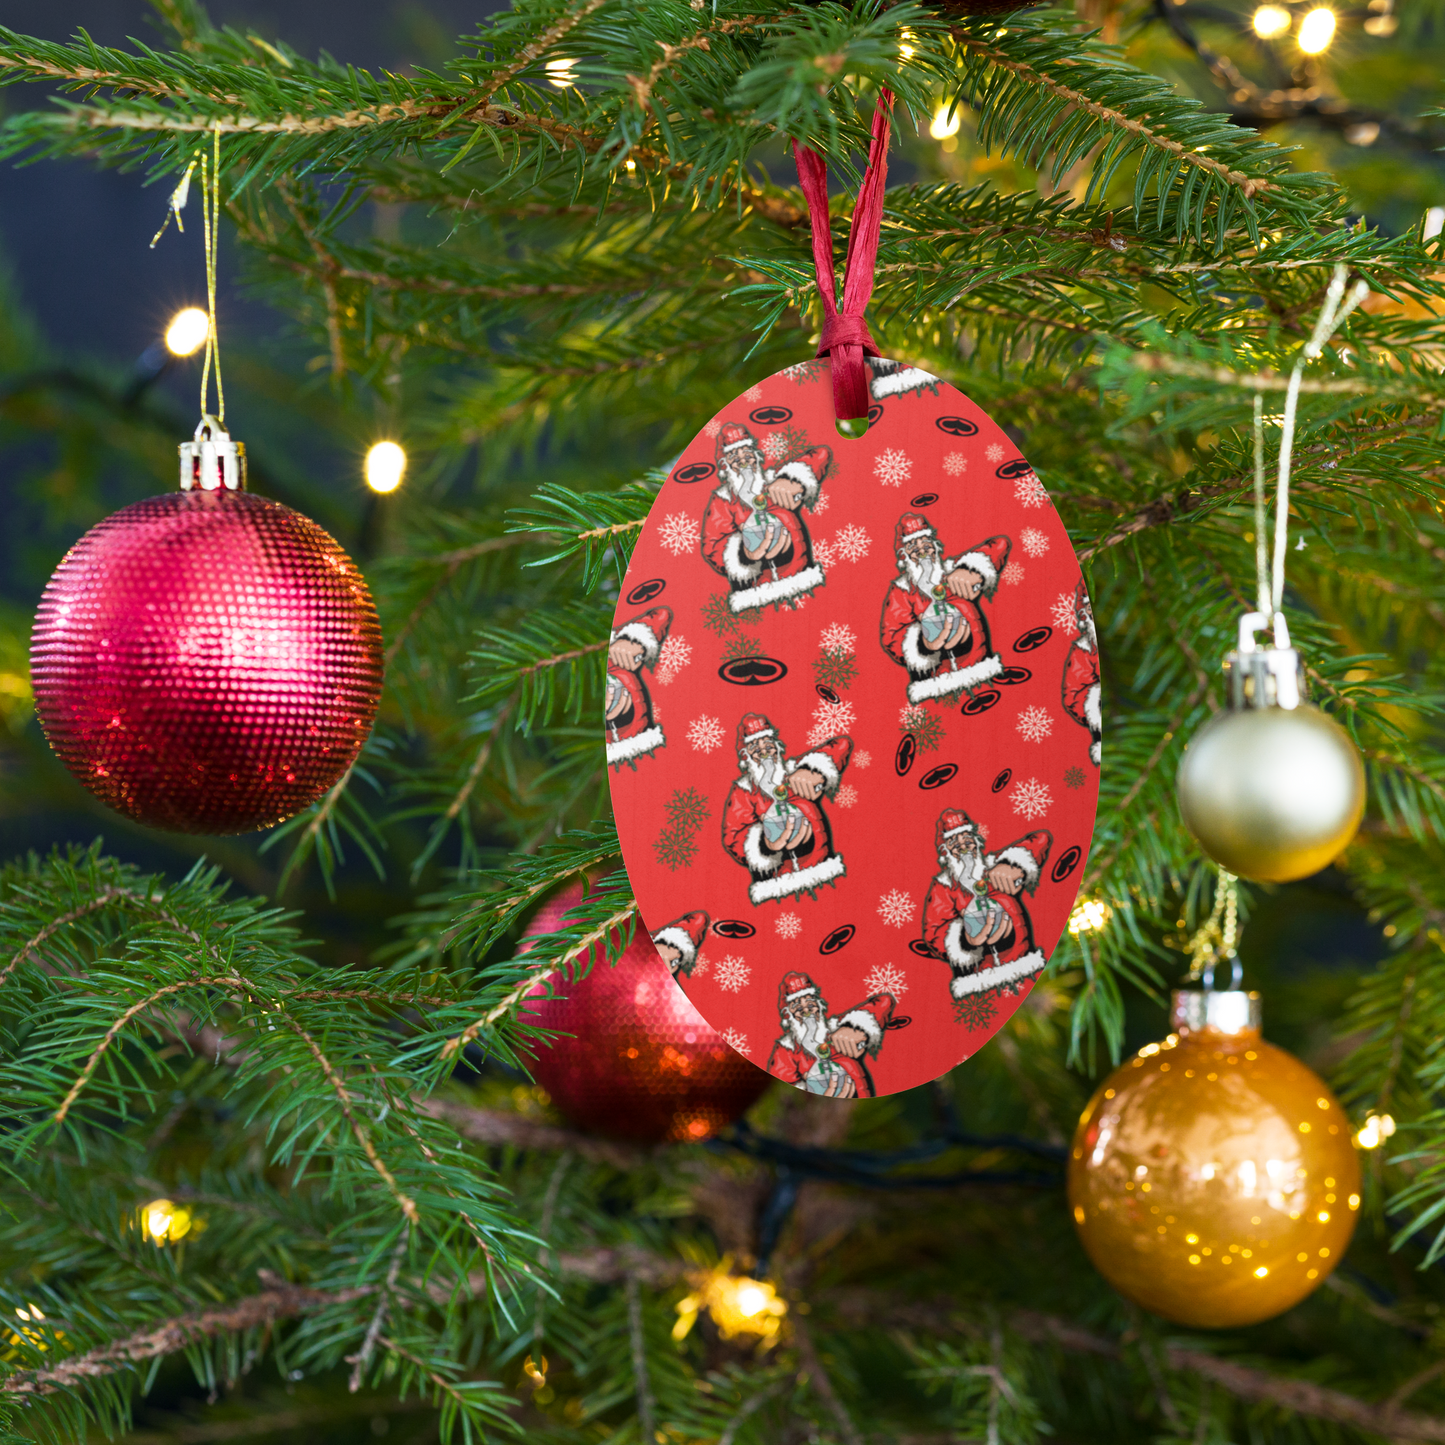 Jingle Bowlz Ornament